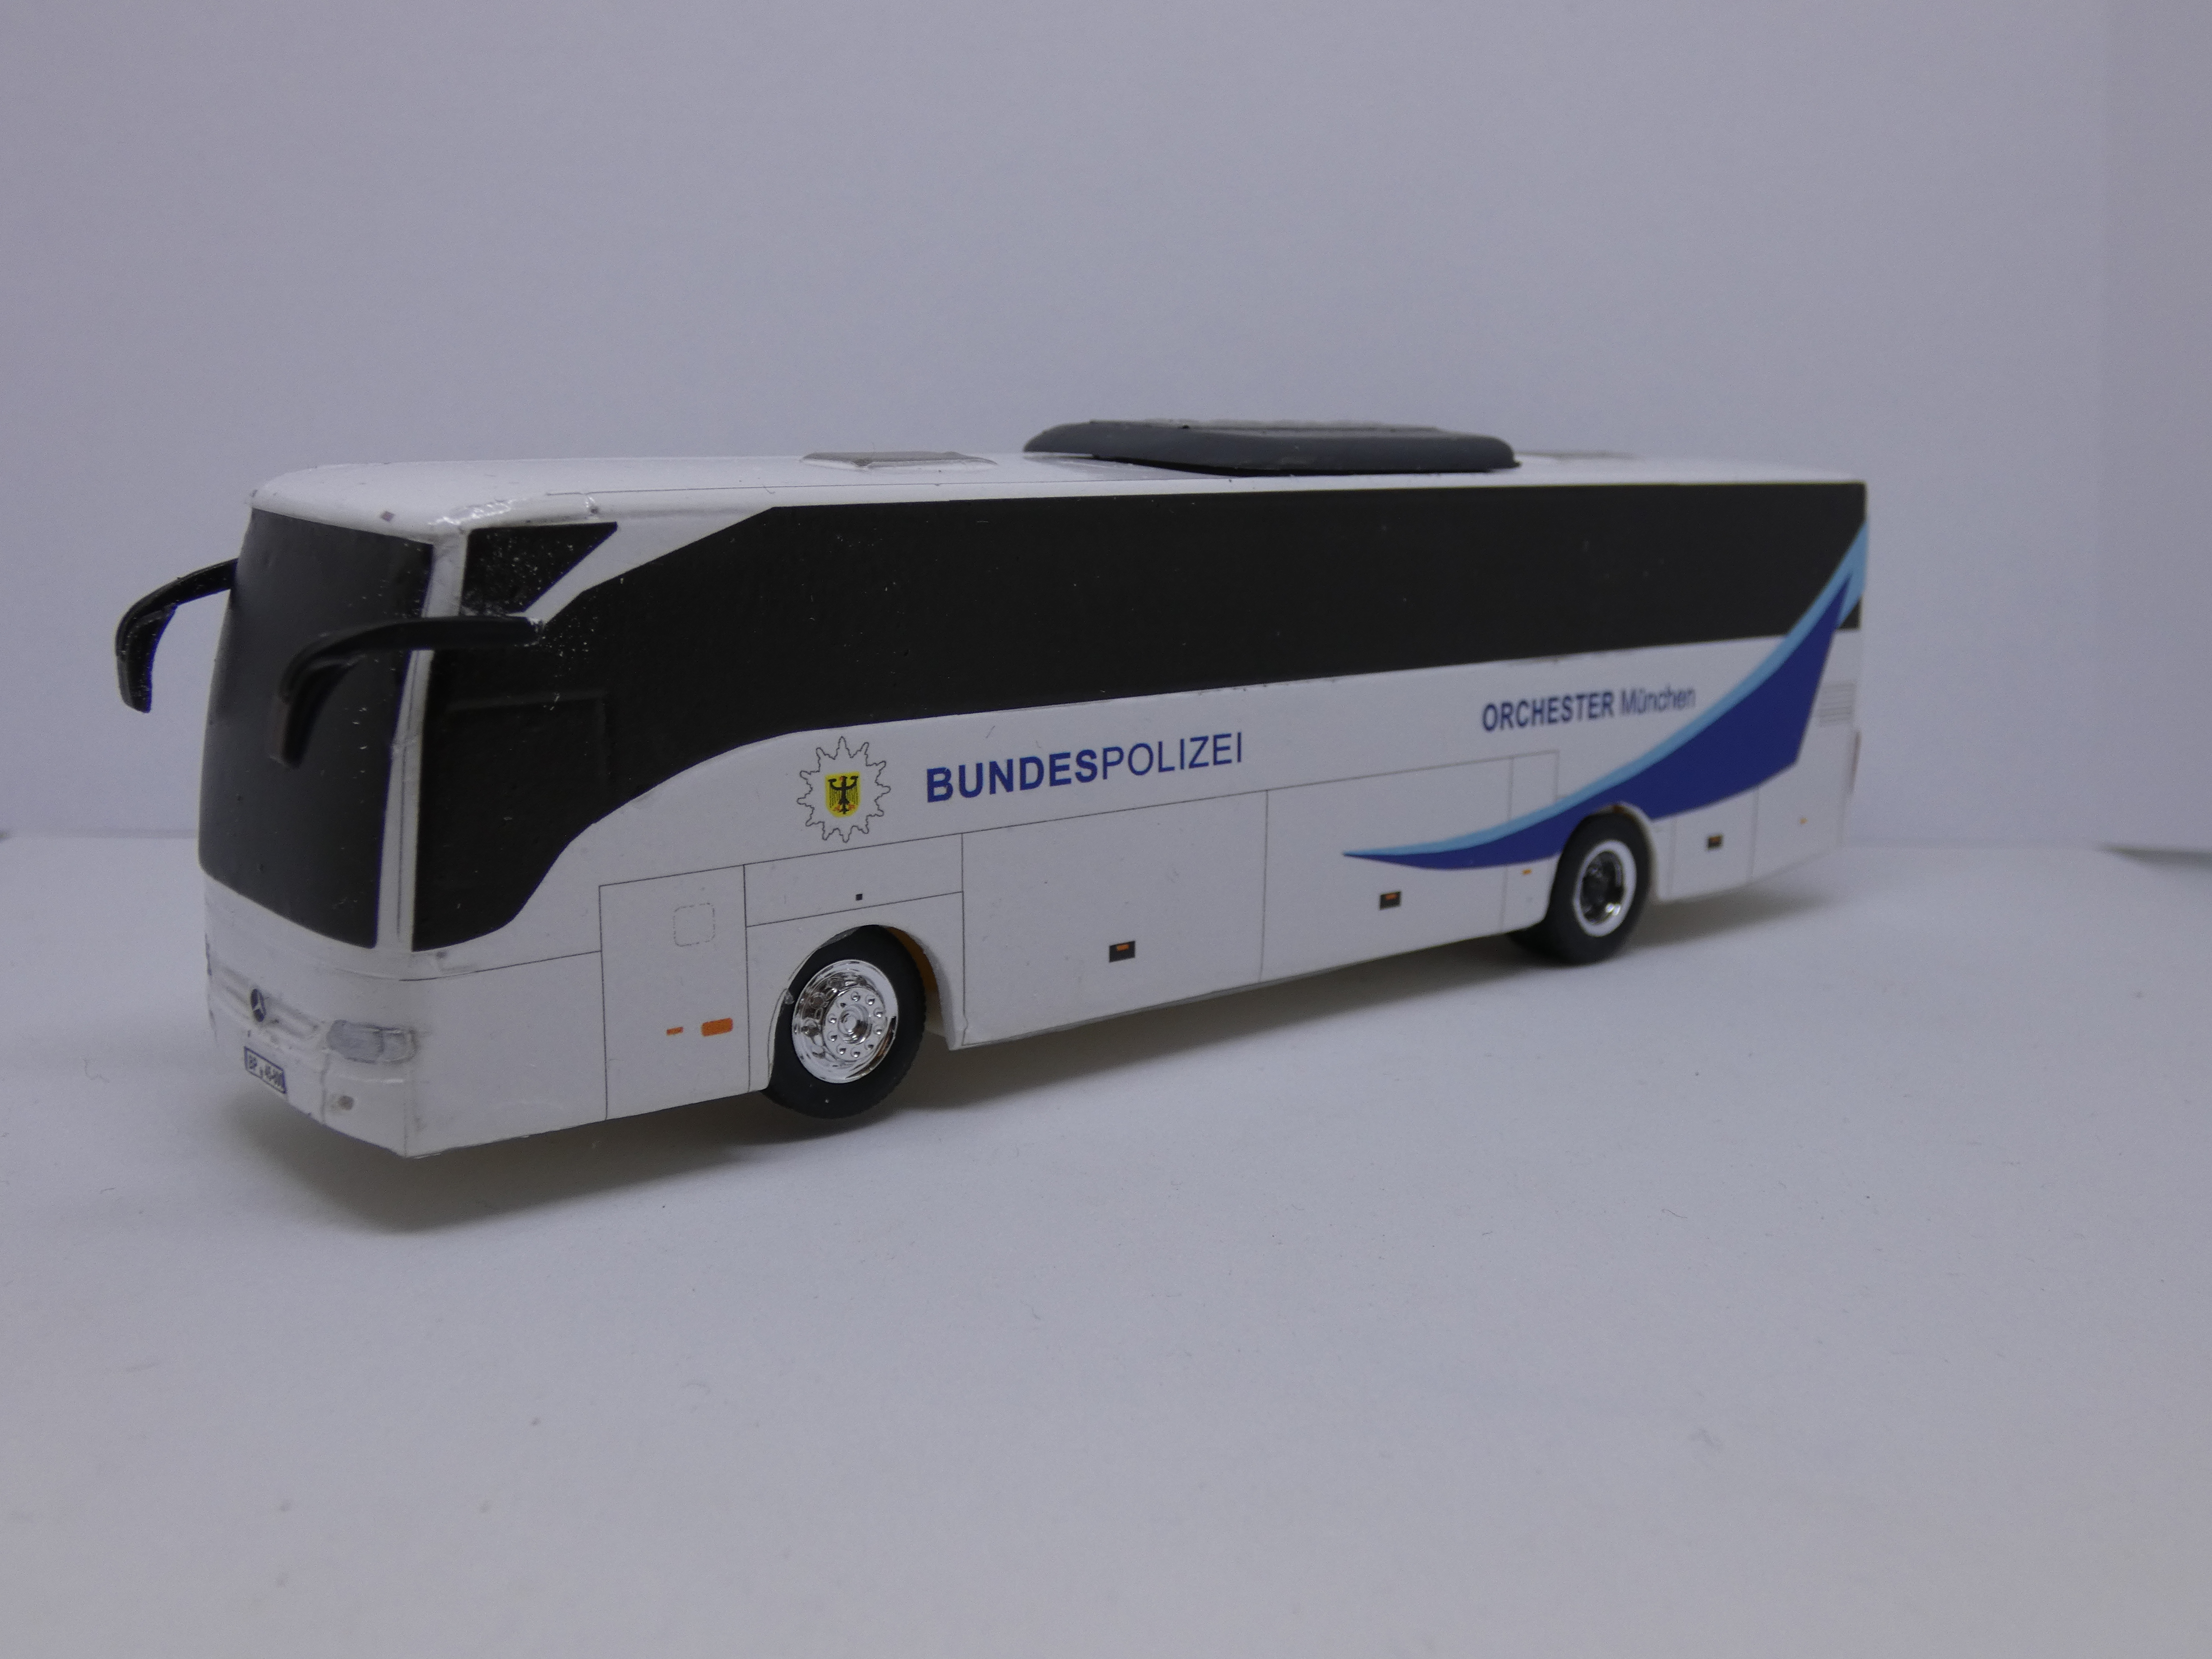 M B Tourismo M1  Reisebus für das Bundespolizeiorchester München